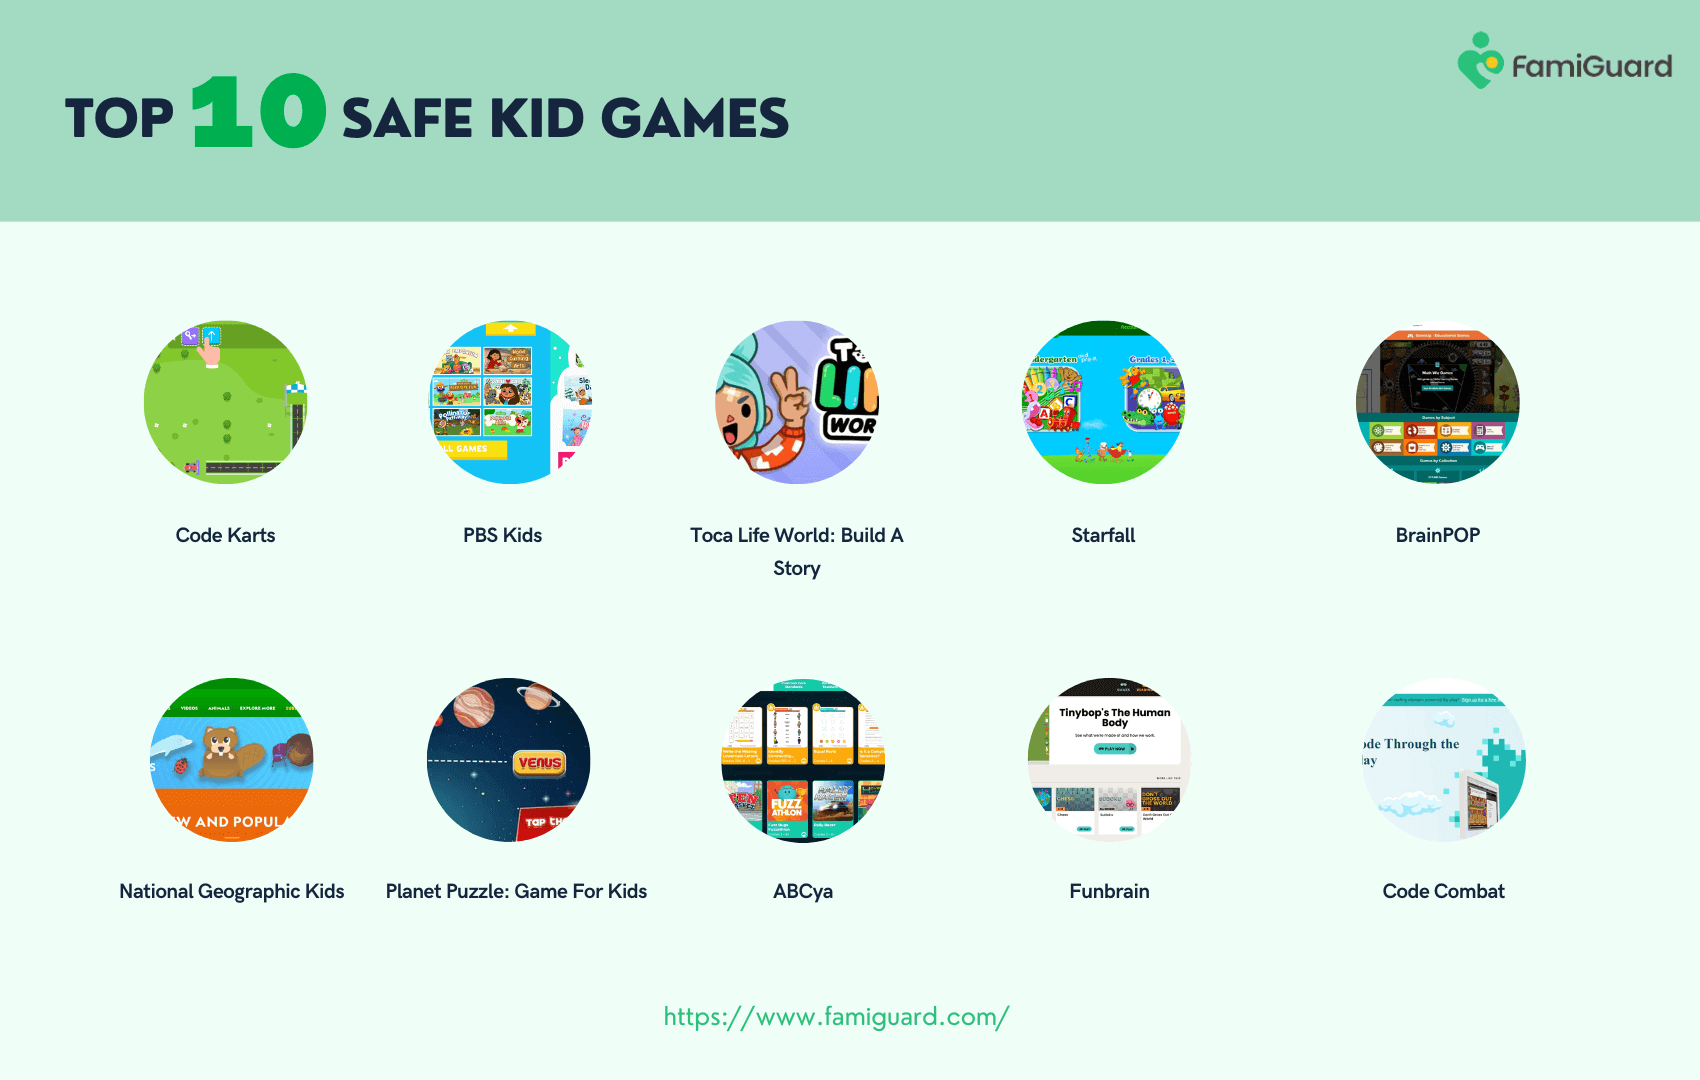 Top 10 Safe Kid Games